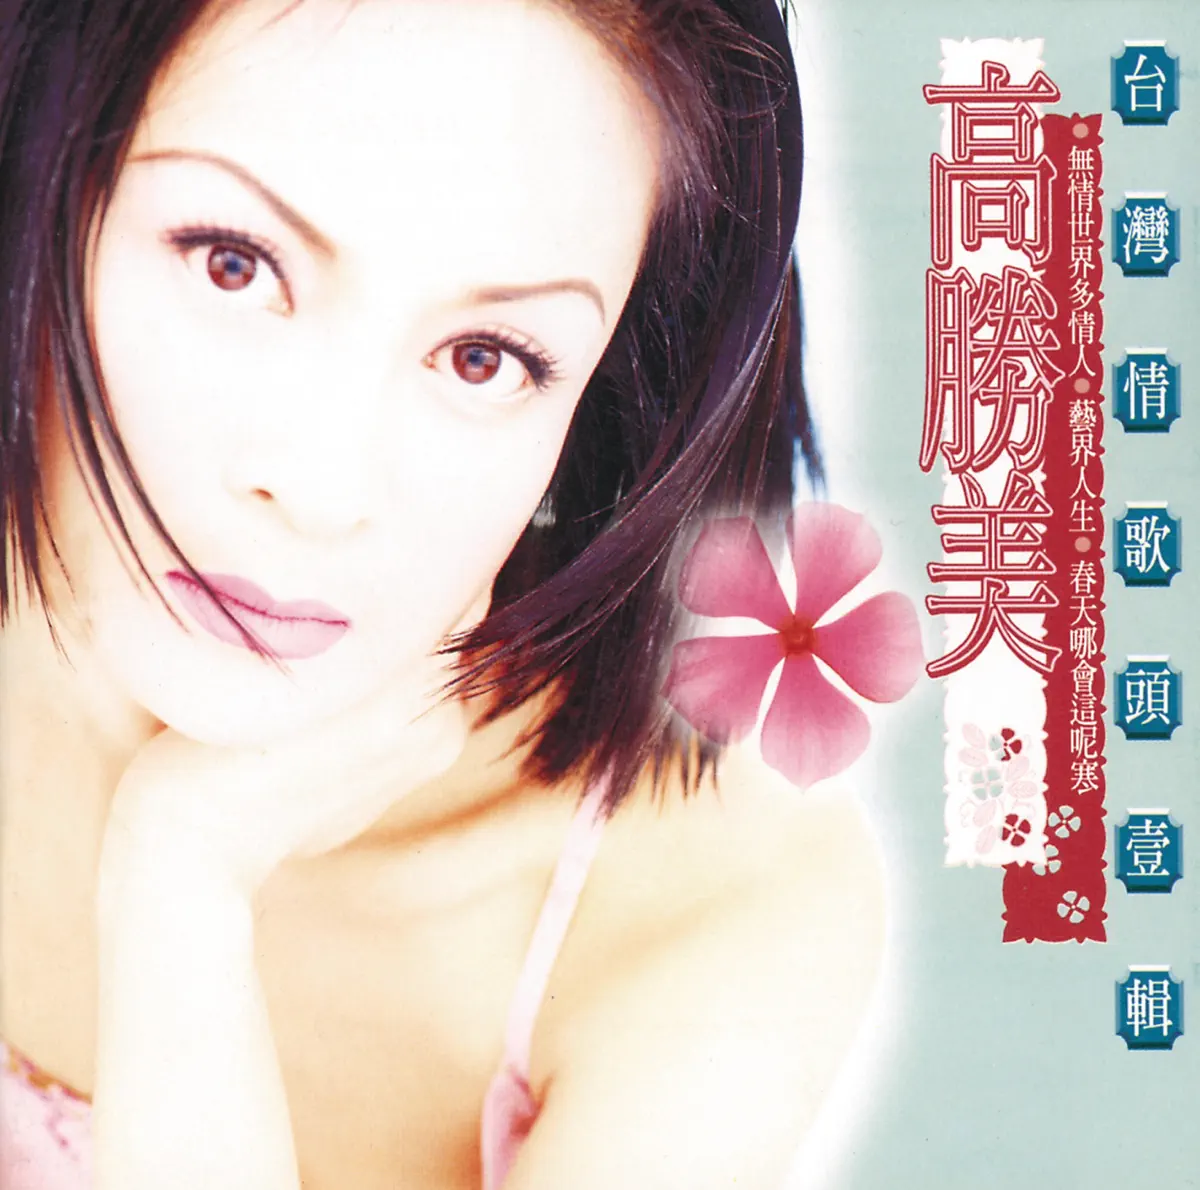 高勝美 - 無情世界多情人(台灣情歌頭壹輯) (1995) [iTunes Plus AAC M4A]-新房子